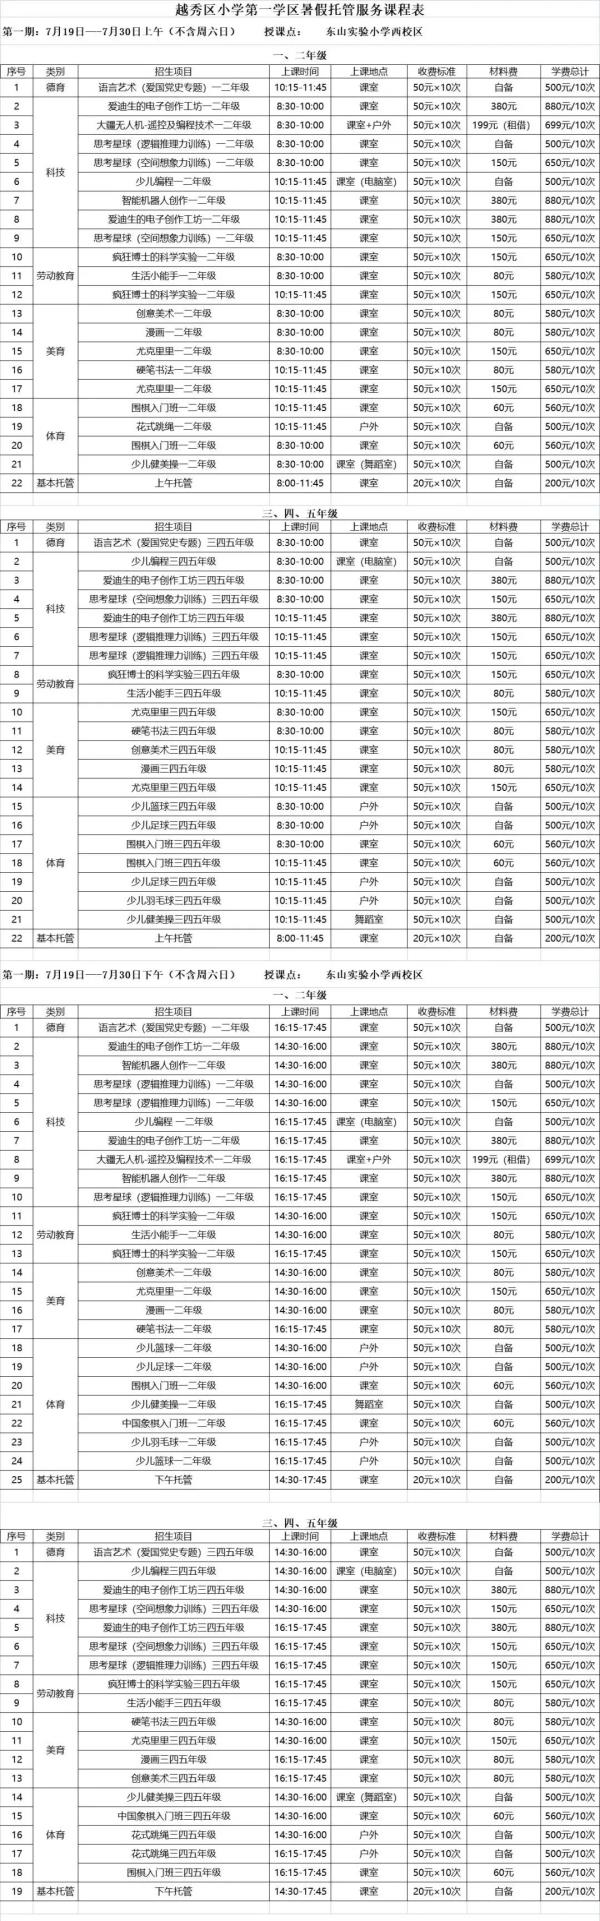 广州番禺小学课程表